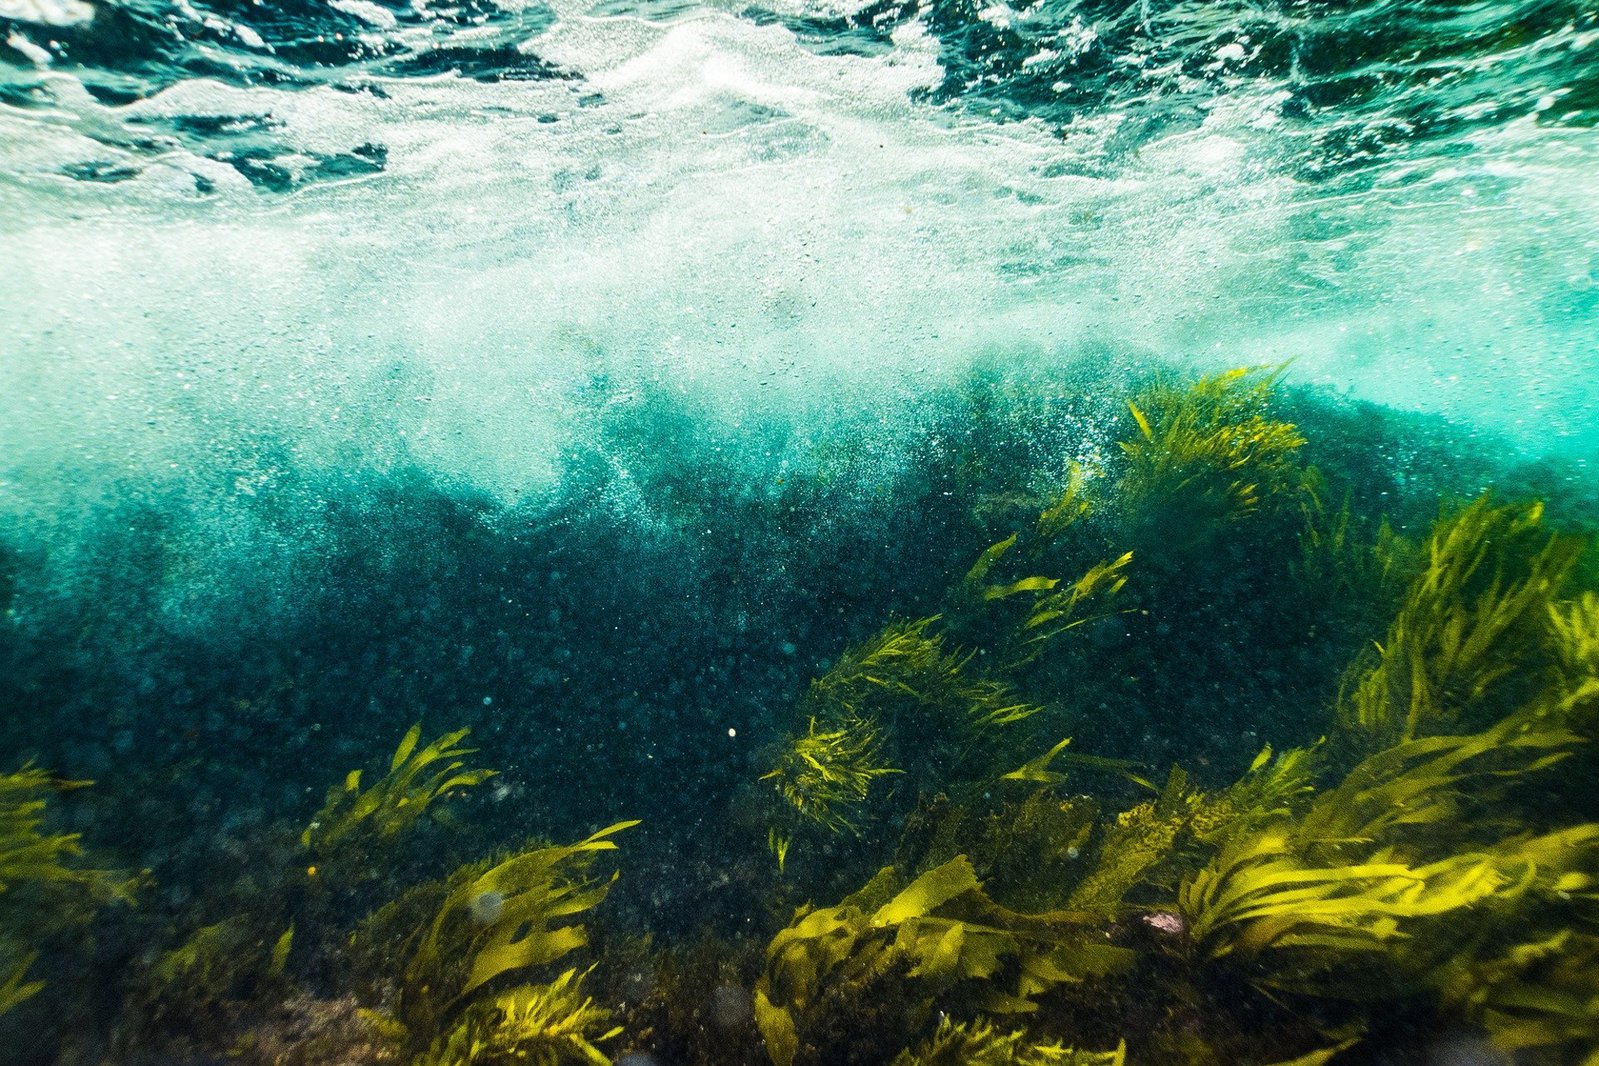 under water Kelp forest